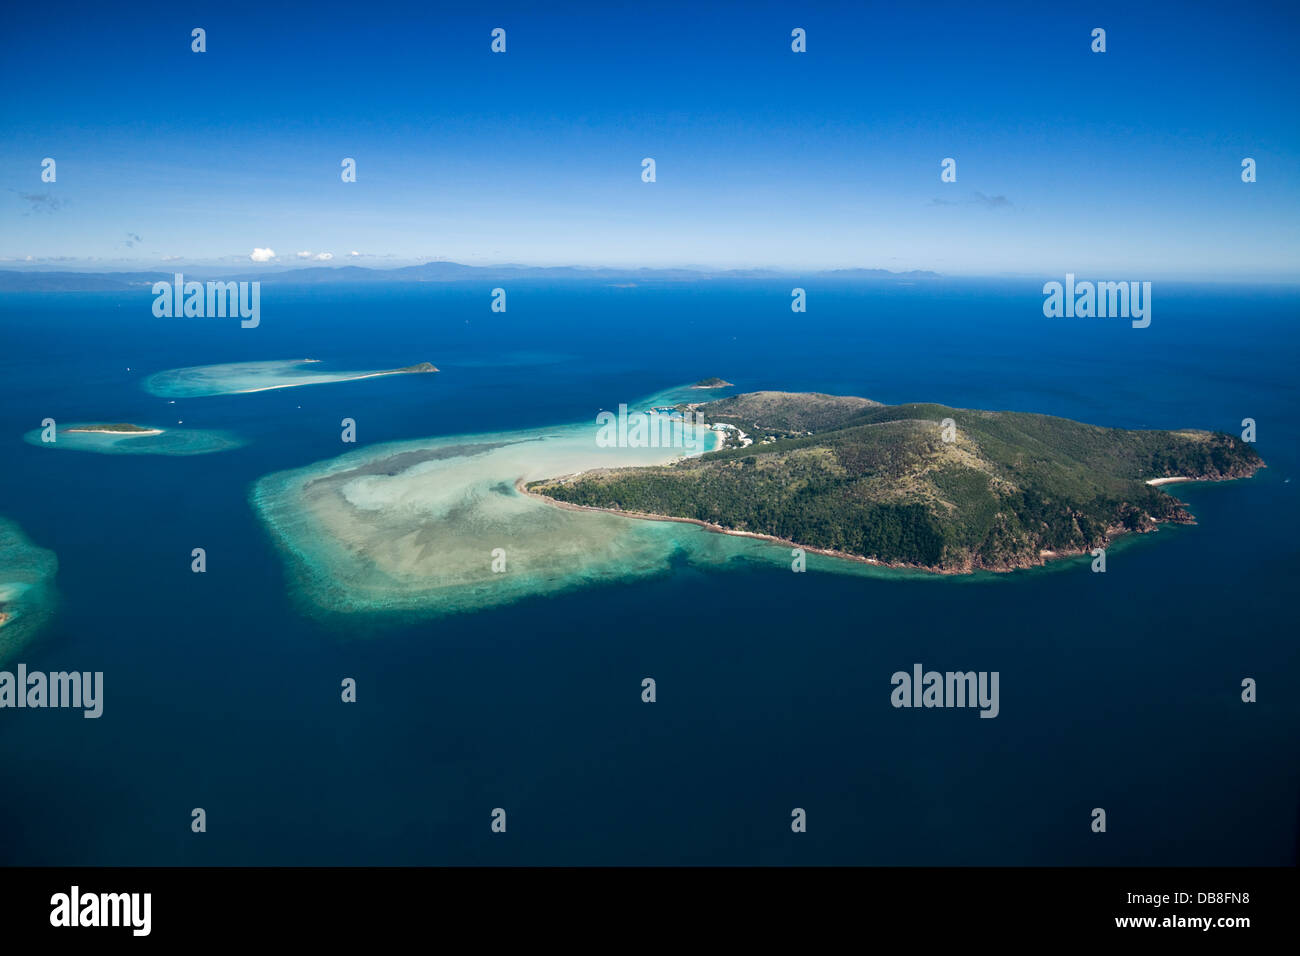 Vue aérienne de l'île de Hayman - une île privée mieux connu pour son complexe de luxe. Whitsunday Islands, Queensland, Australie Banque D'Images